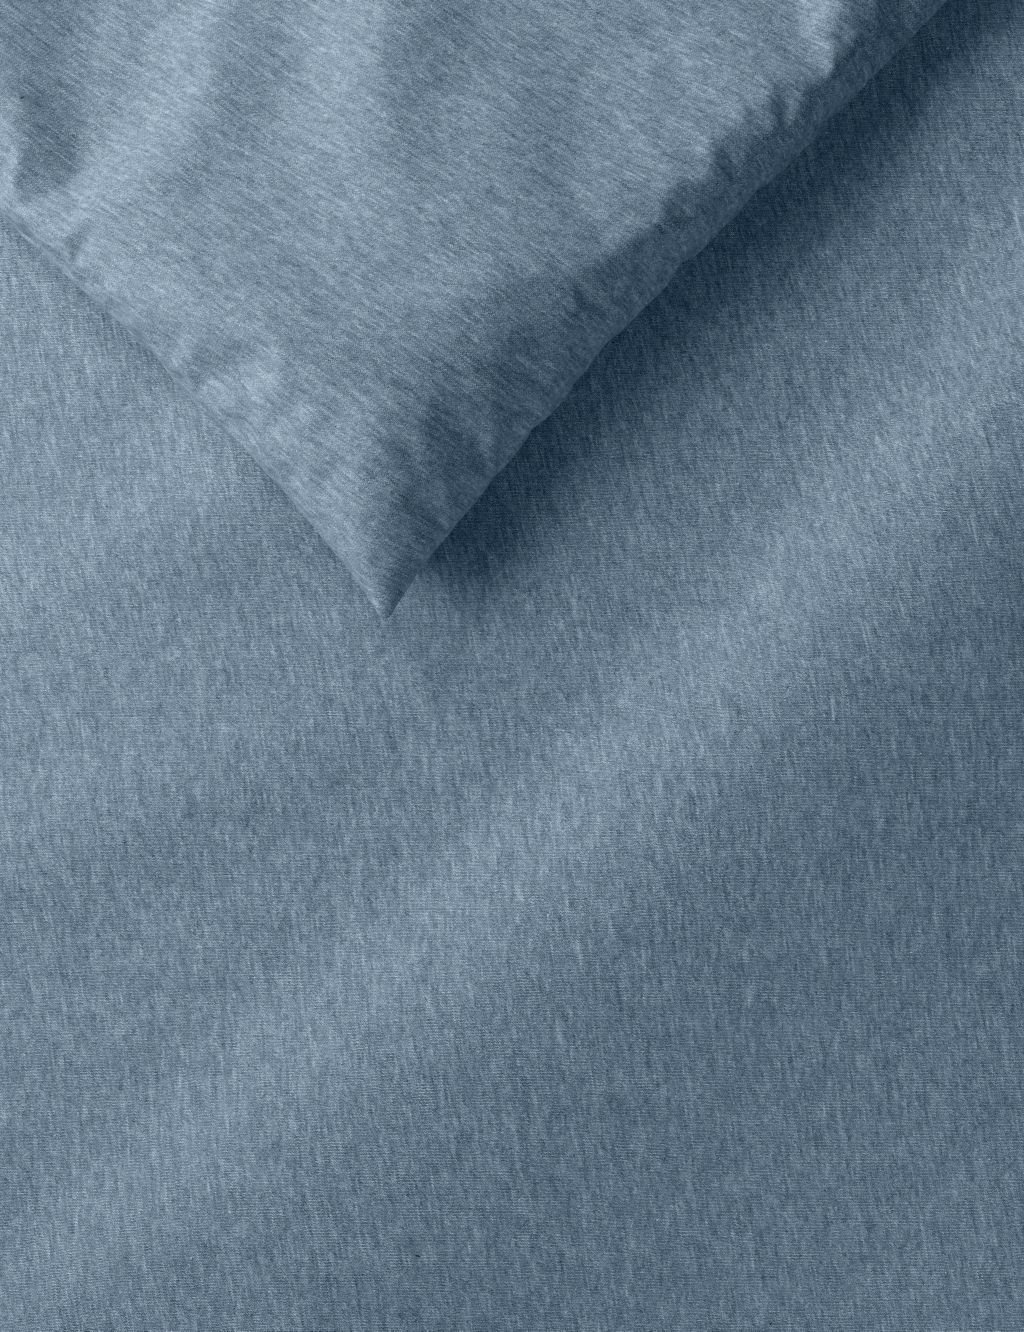 Jersey Bedding Set image 2